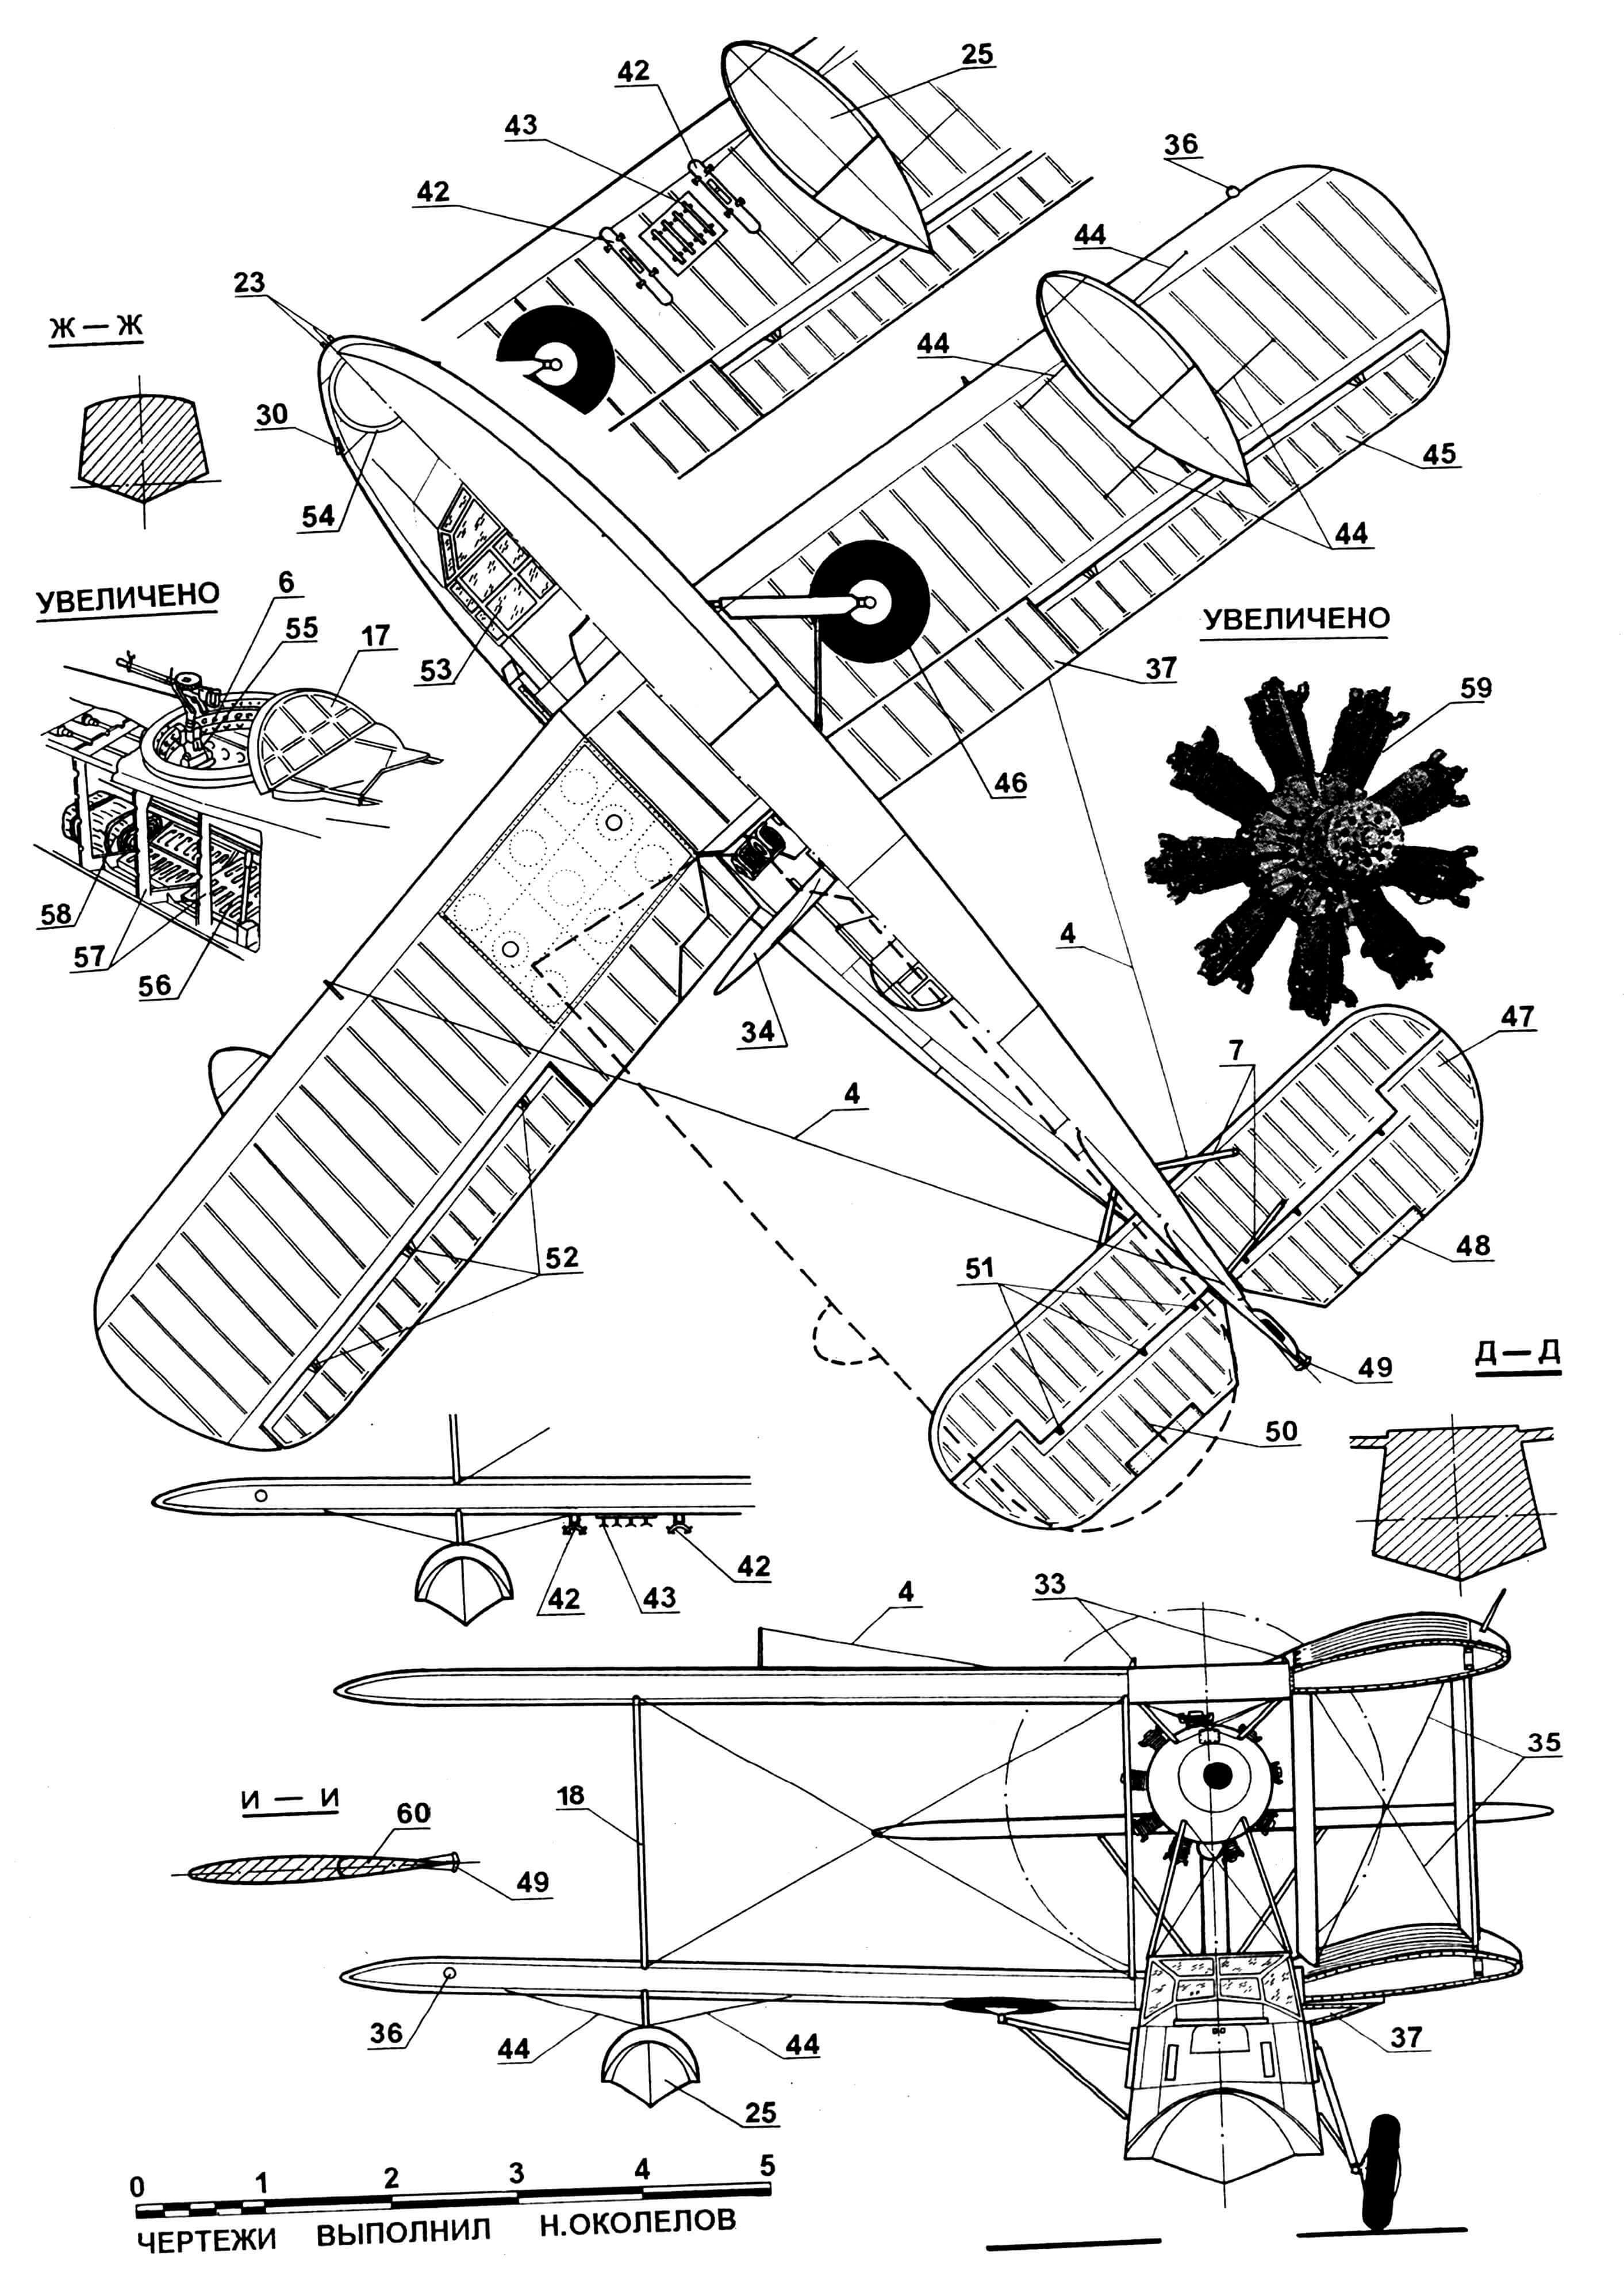 Самолет-амфибия Walrus Mk.I-II: 1,39 — подножки; 2 — мотогондола; 3 — стойки антенны; 4 — антенна радиостанции; 5 — двигатель «Пегас II» (IV), 6 — турель стрелка-радиста; 7 — подкосы стабилизатора; 8 — триммер руля поворота; 9 — тяга триммера; 10 — колесо хвостовое; 11 — подкос стойки шасси; 12 — колесо шасси; 13 — стойка шасси; 14 — обтекатель узла крепления основной стойки шасси; 15 — крюк стартовый; 16 — огонь габаритный; 17 — крышка турели стрелка-радиста; 18 — стойки крыла; 19,35 — растяжки крыльев; 20 — лючок эксплуатационный; 21 — ПВД; 22 — форточка сдвижная; 23 — серьги швартовочные; 24 — окно кабины стрелка-радиста; 25 — поплавки крыльевые; 26 — трос для посадки в кабину; 27 — тяга руля поворота; 28 — пулеметы; 29 — козырек фонаря кабины; 30,40 — отражатели волн; 31 — стойка капота двигателя; 32 — подкос капота двигателя; 33 — серьги подъема самолета; 34 — винт двигателя; 36 — огни аэронавигационные; 37 — часть крыла, откидная; 38 — нервюра корневая; 41 — трос для посадки в кабину штурмана; 42 — бомбодержатели для бомб среднего калибра; 43 — бомбодержатели для бомб малого калибра; 44 — растяжки крыльевого поплавка; 45 — элерон; 46 — колесо шасси в убранном положении; 47 — руль высоты; 48 — триммер руля высоты; 49 — качалка триммера руля направления; 50 — качалка триммера руля высоты; 51 — узлы навески руля высоты; 52 — узлы навески элеронов; 53 — часть фонаря верхняя, сдвижная; 54 — турель кабины штурмана; 55 — ручка поворота турели; 56 — пол кабины стрелка; 57 — шпангоуты фюзеляжа; 58 —лодка надувная, спасательная; 59 — двигатель «Пегас IV»; 60 — руль поворота.